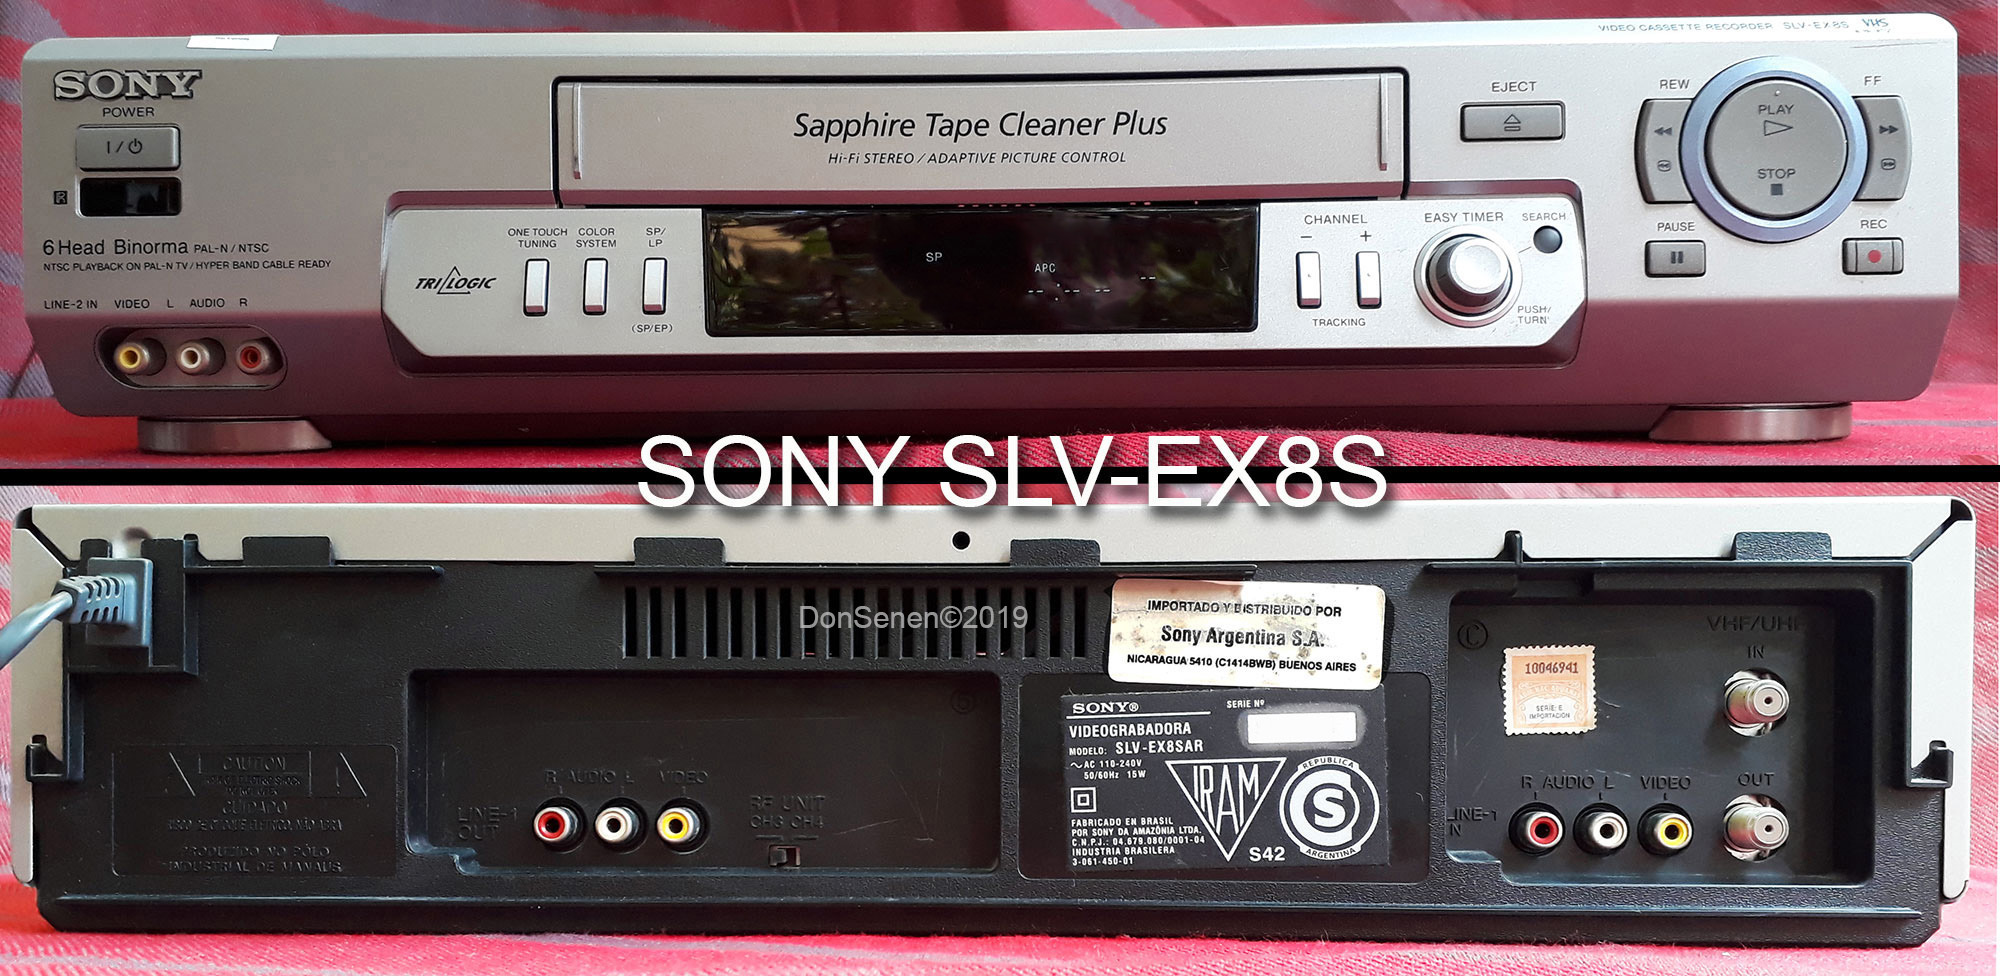 Videocasetera VCR SONY SLV-EX8S